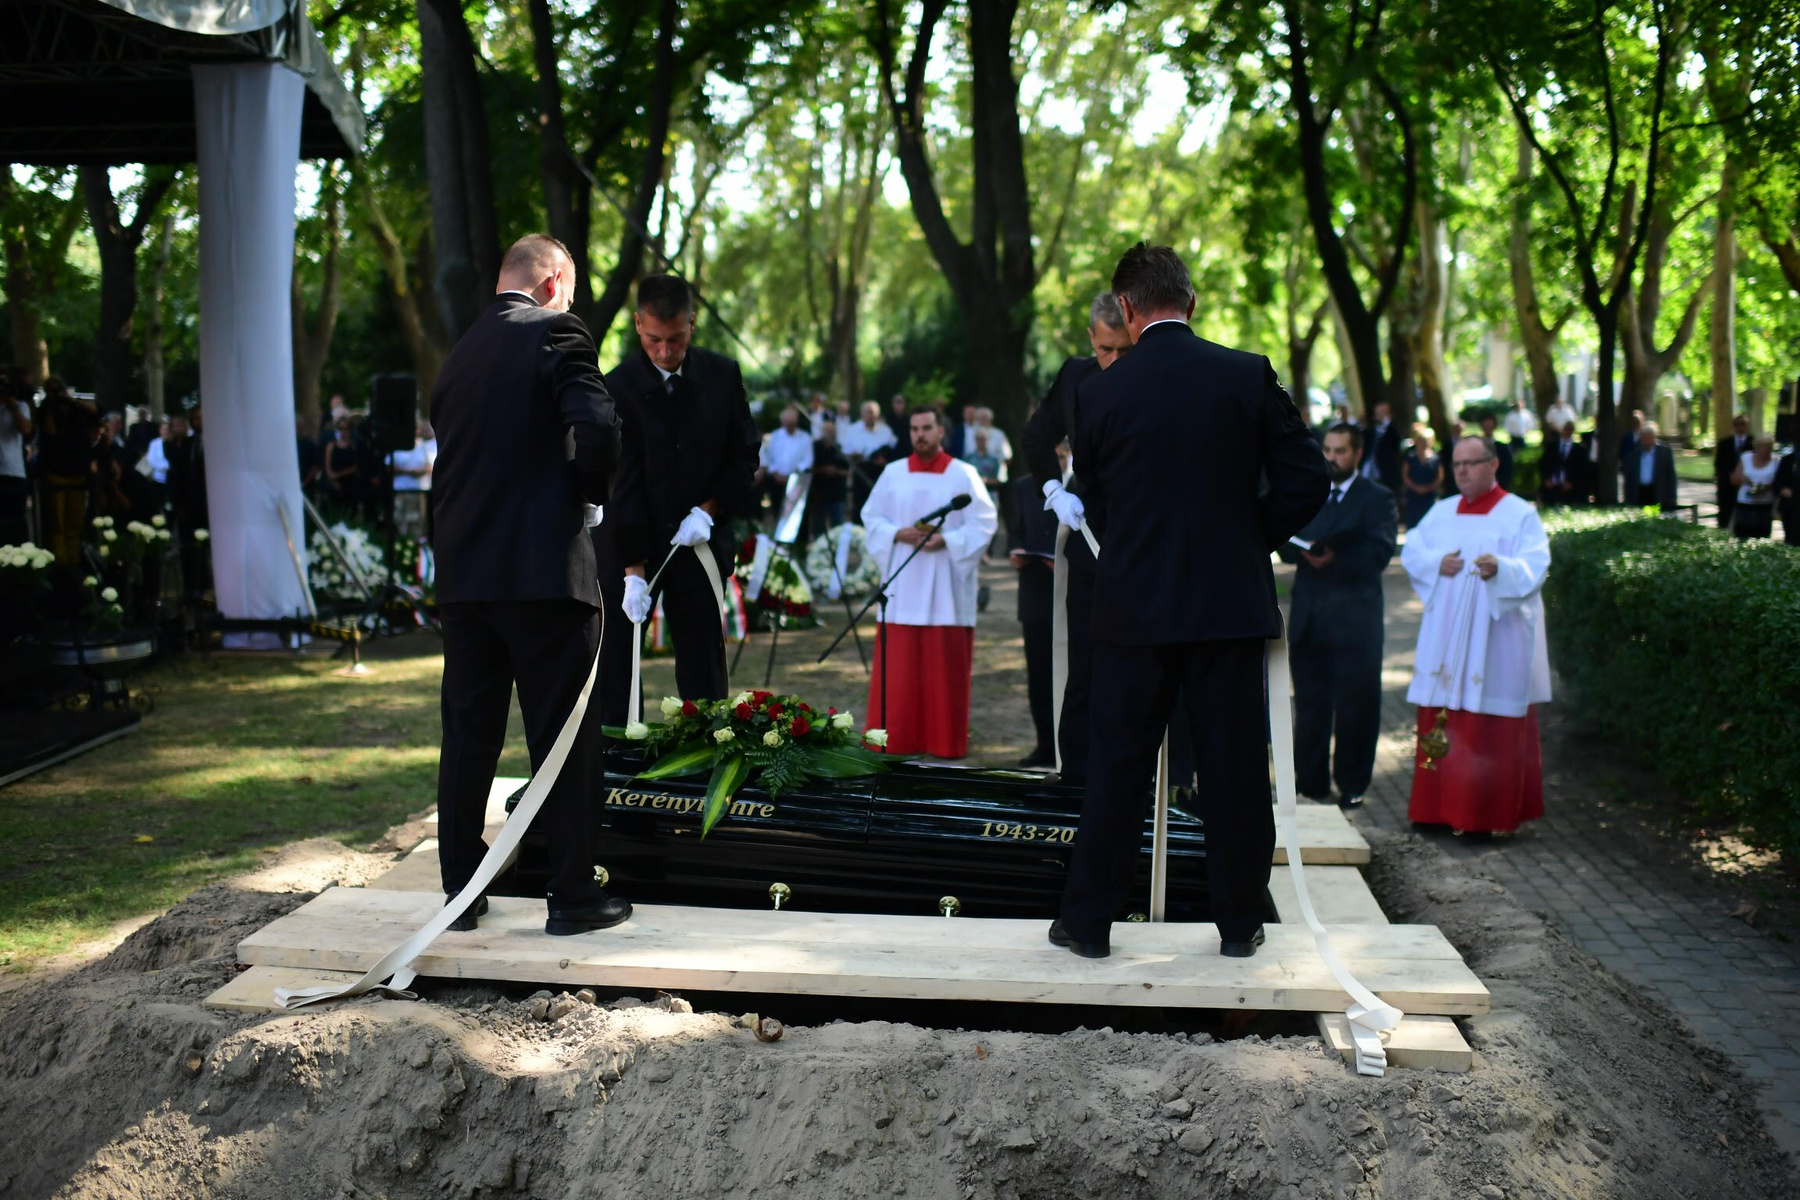 Kerényi Imre augusztus 11-én halt meg 74 éves korában, kedden több százan vettek végső búcsút tőle.